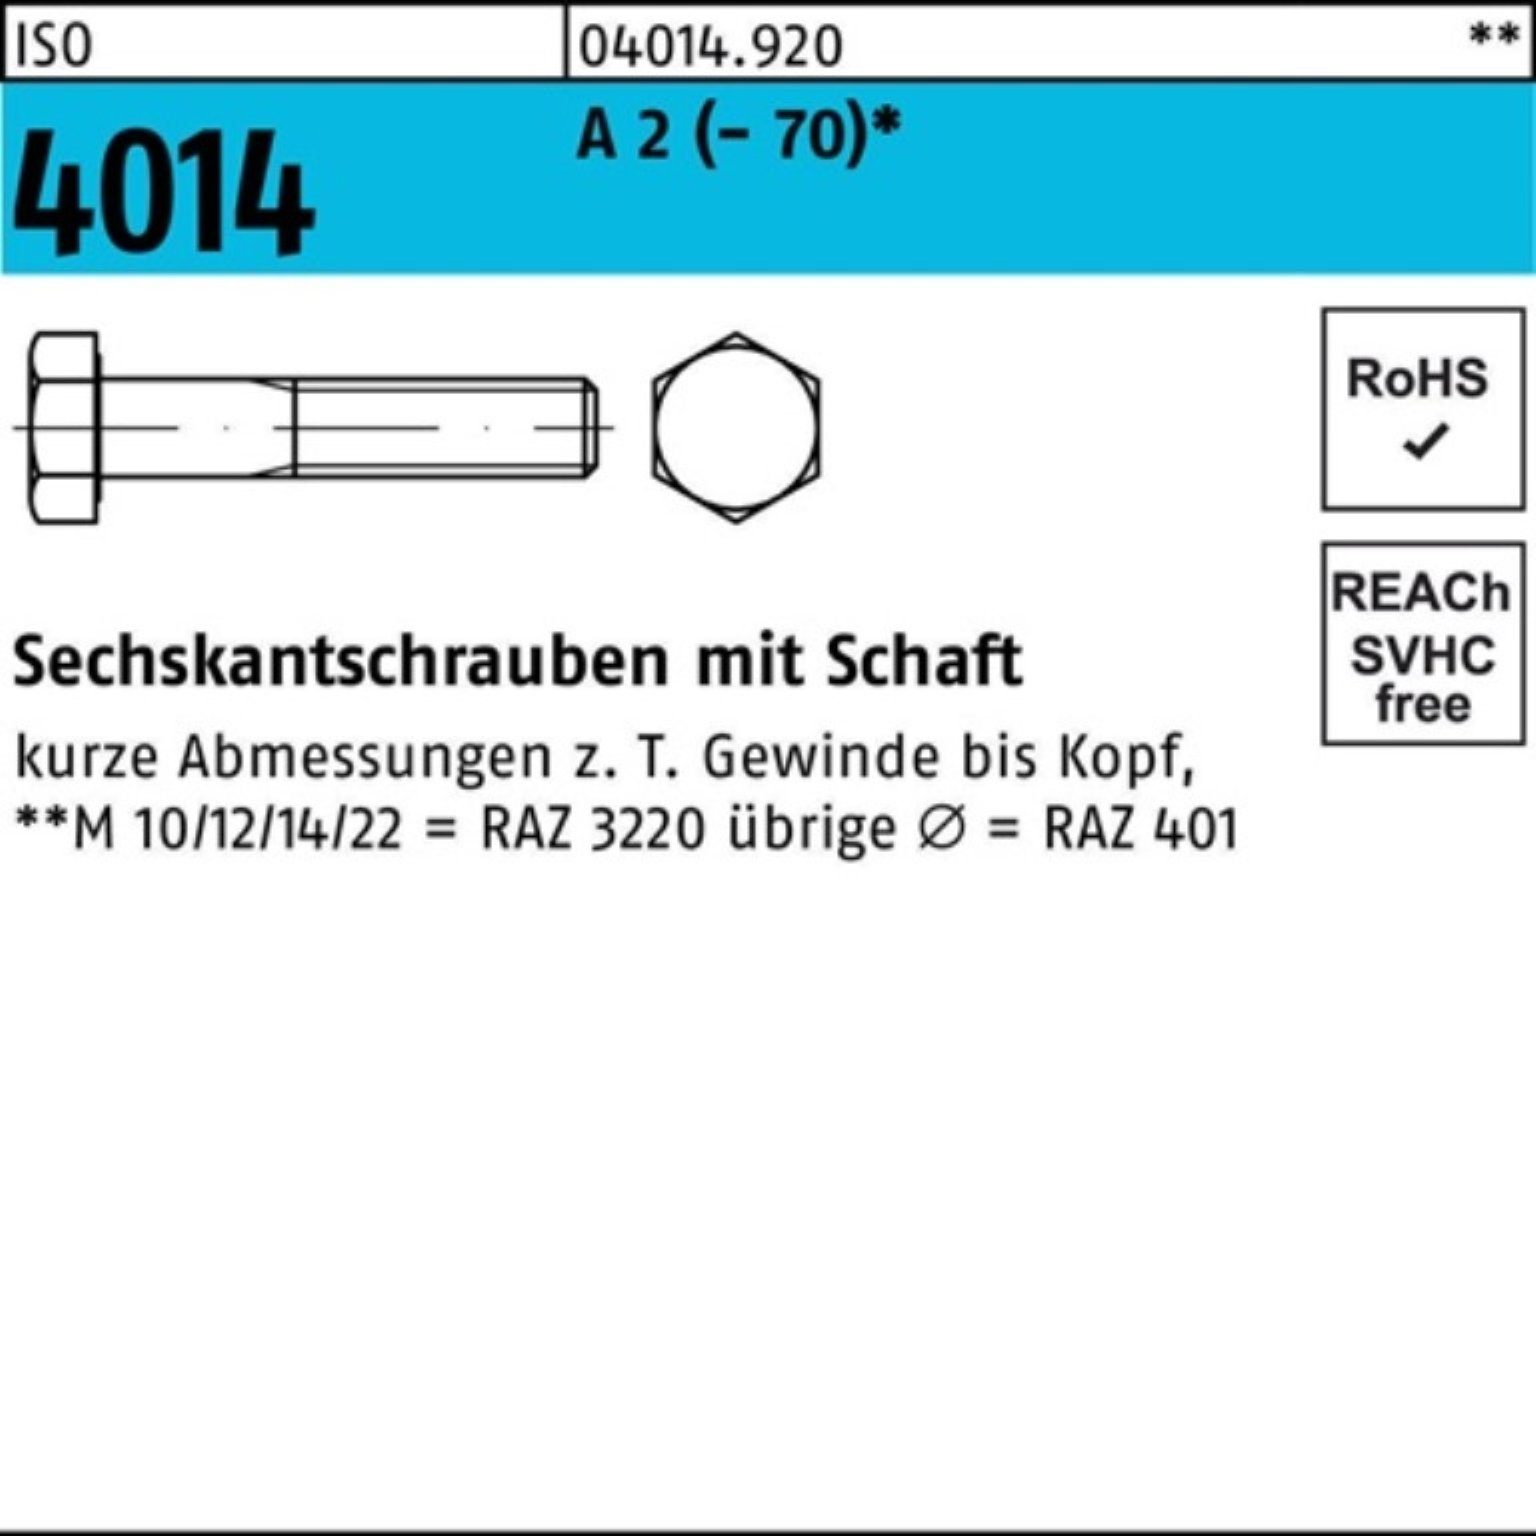 Bufab Sechskantschraube 100er Pack Sechskantschraube ISO 4014 Schaft M8x 65 A 2 (70) 100 St